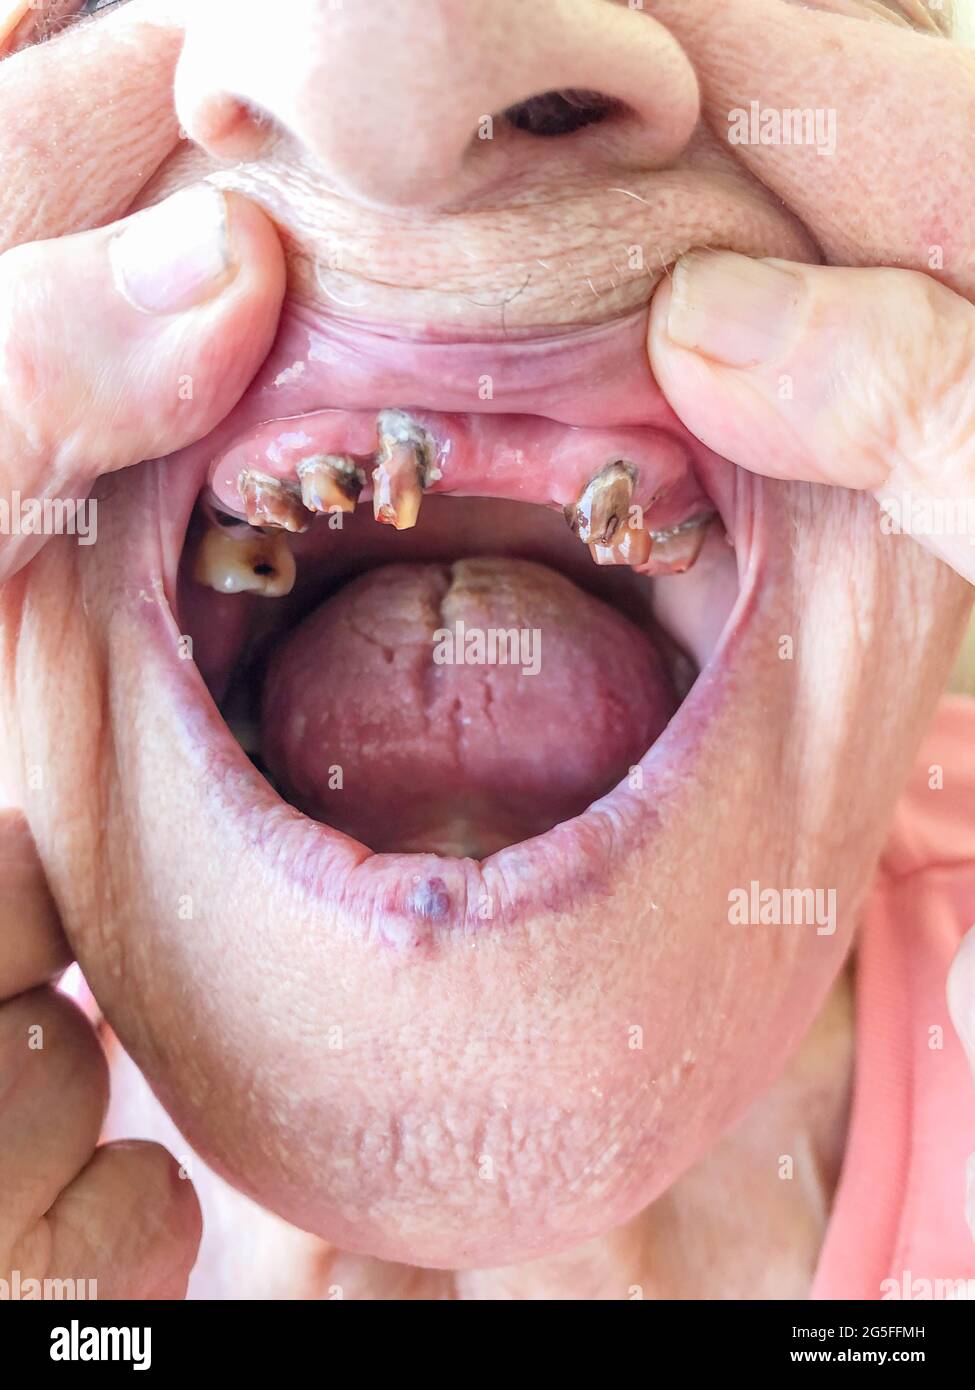 gros plan de la bouche d'une vieille femme avec de très mauvaises dents Banque D'Images